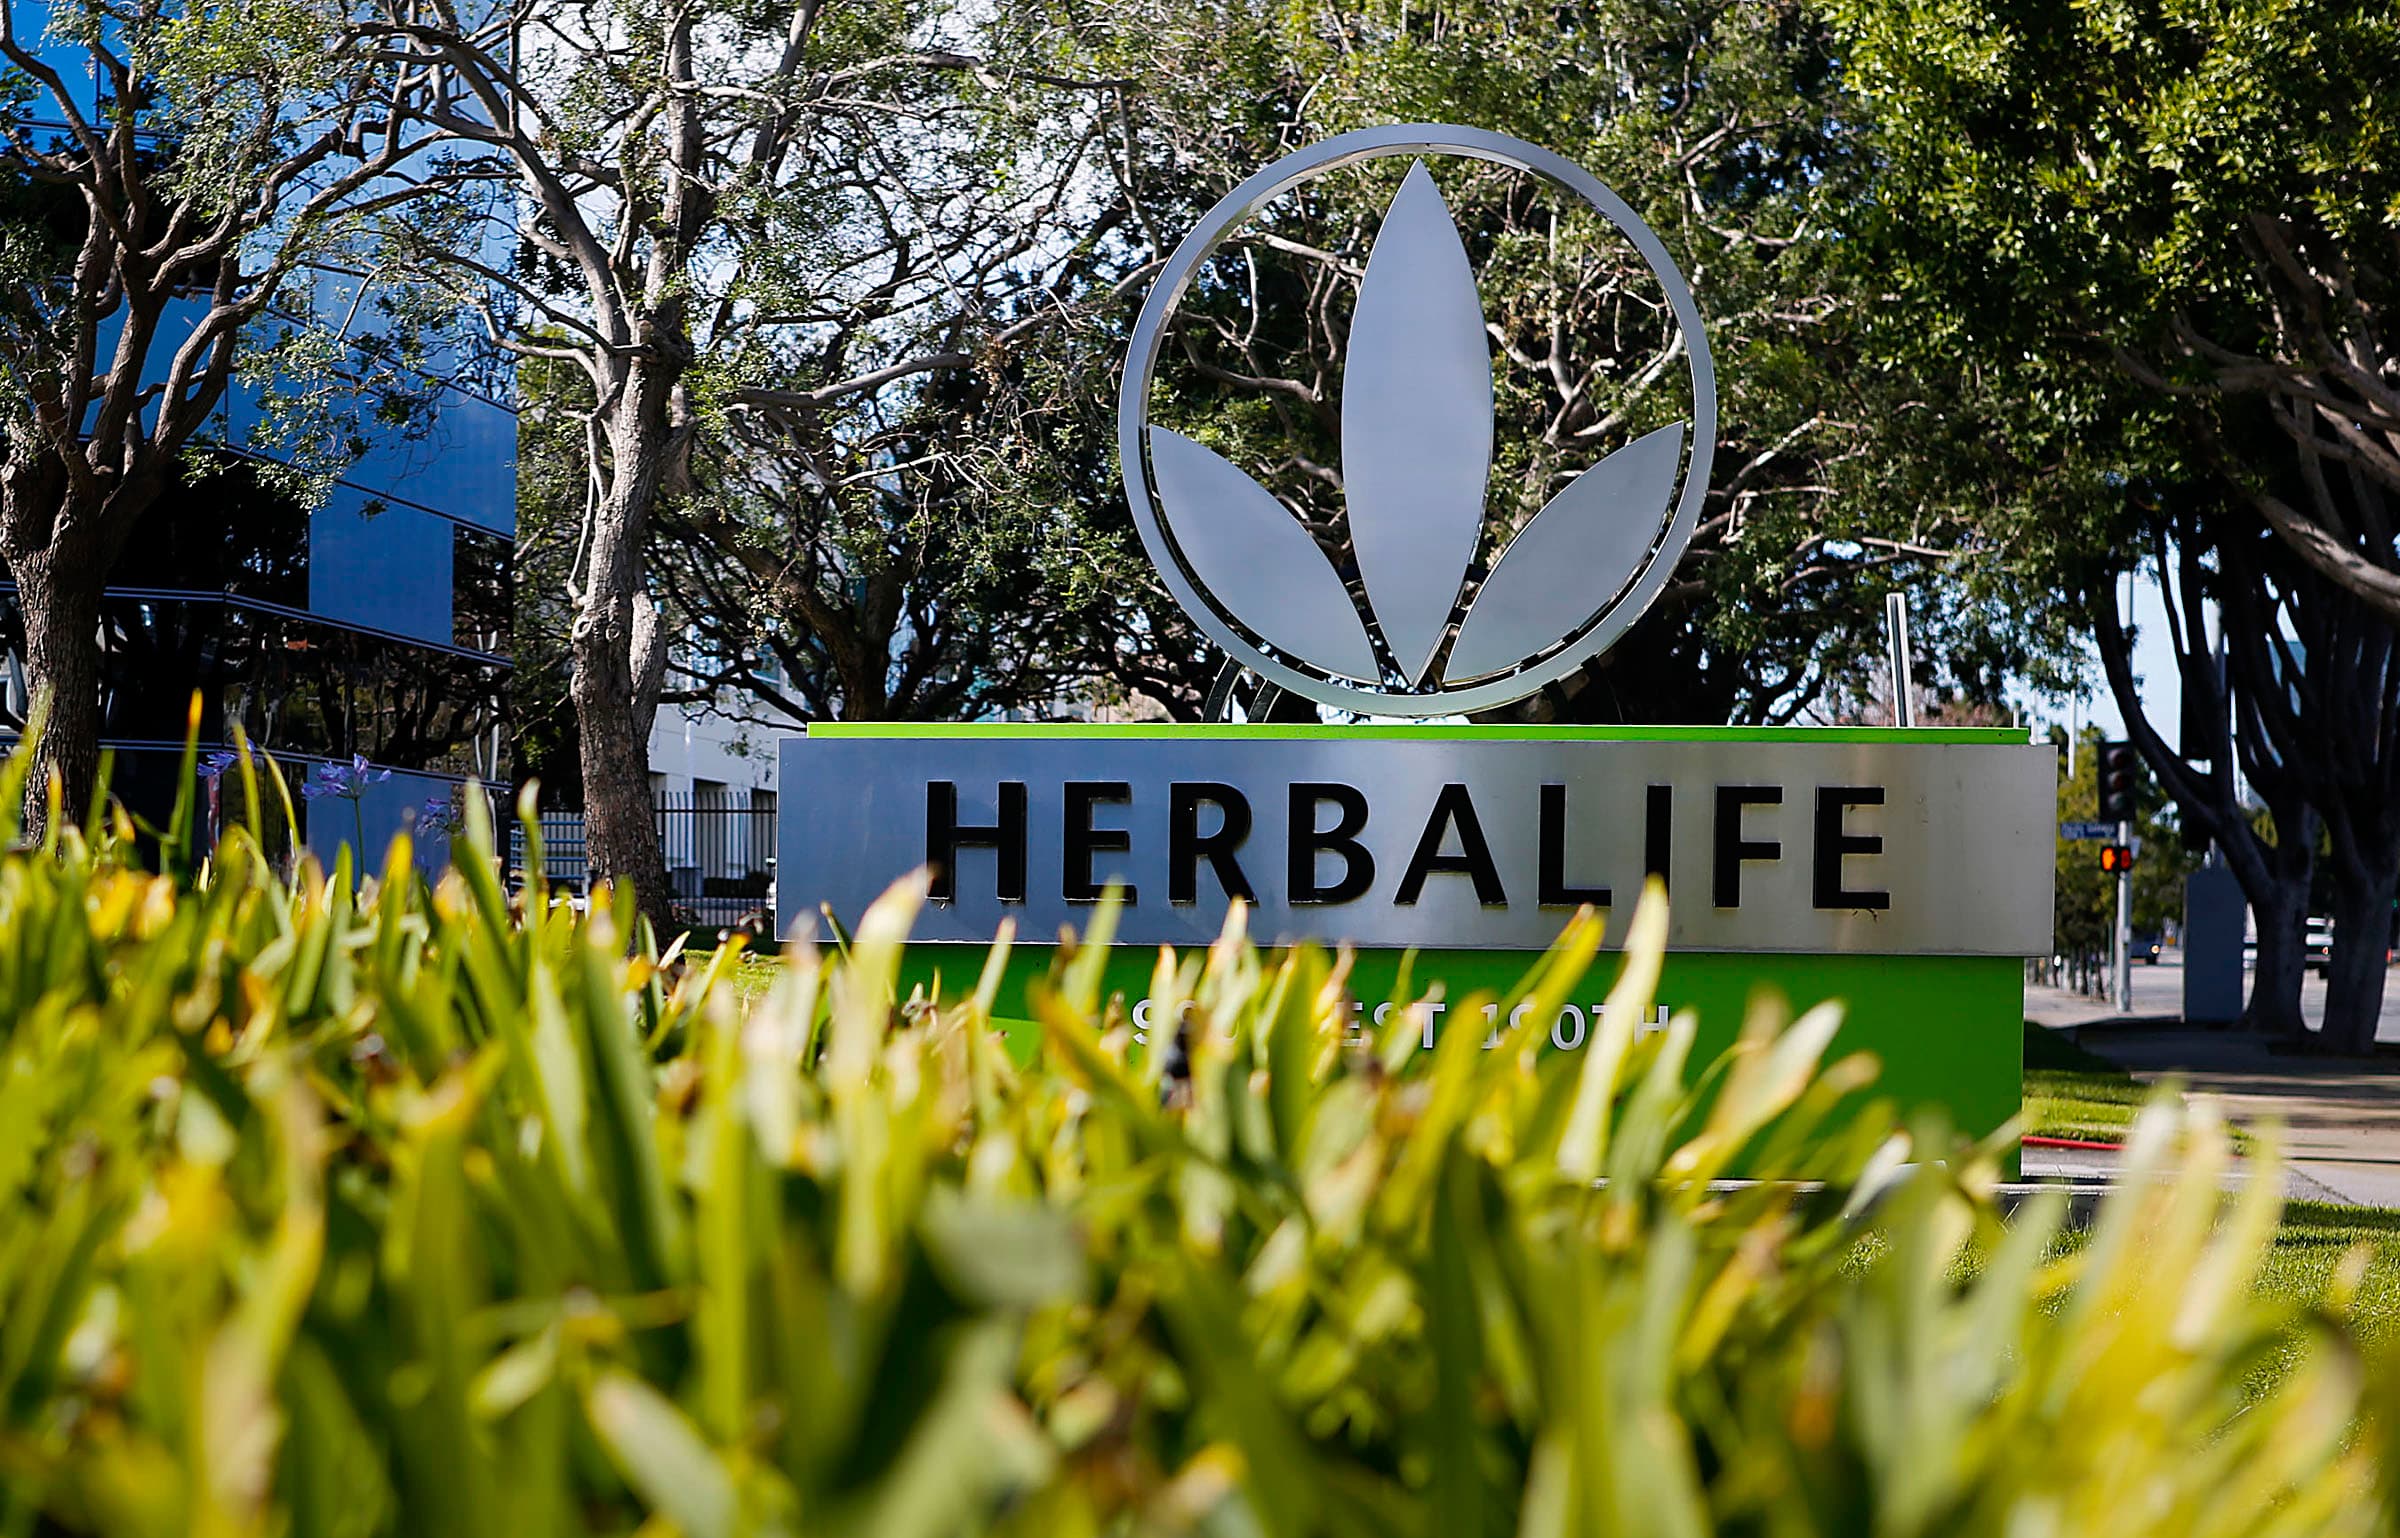 Herbalife earnings top estimates, sales in line